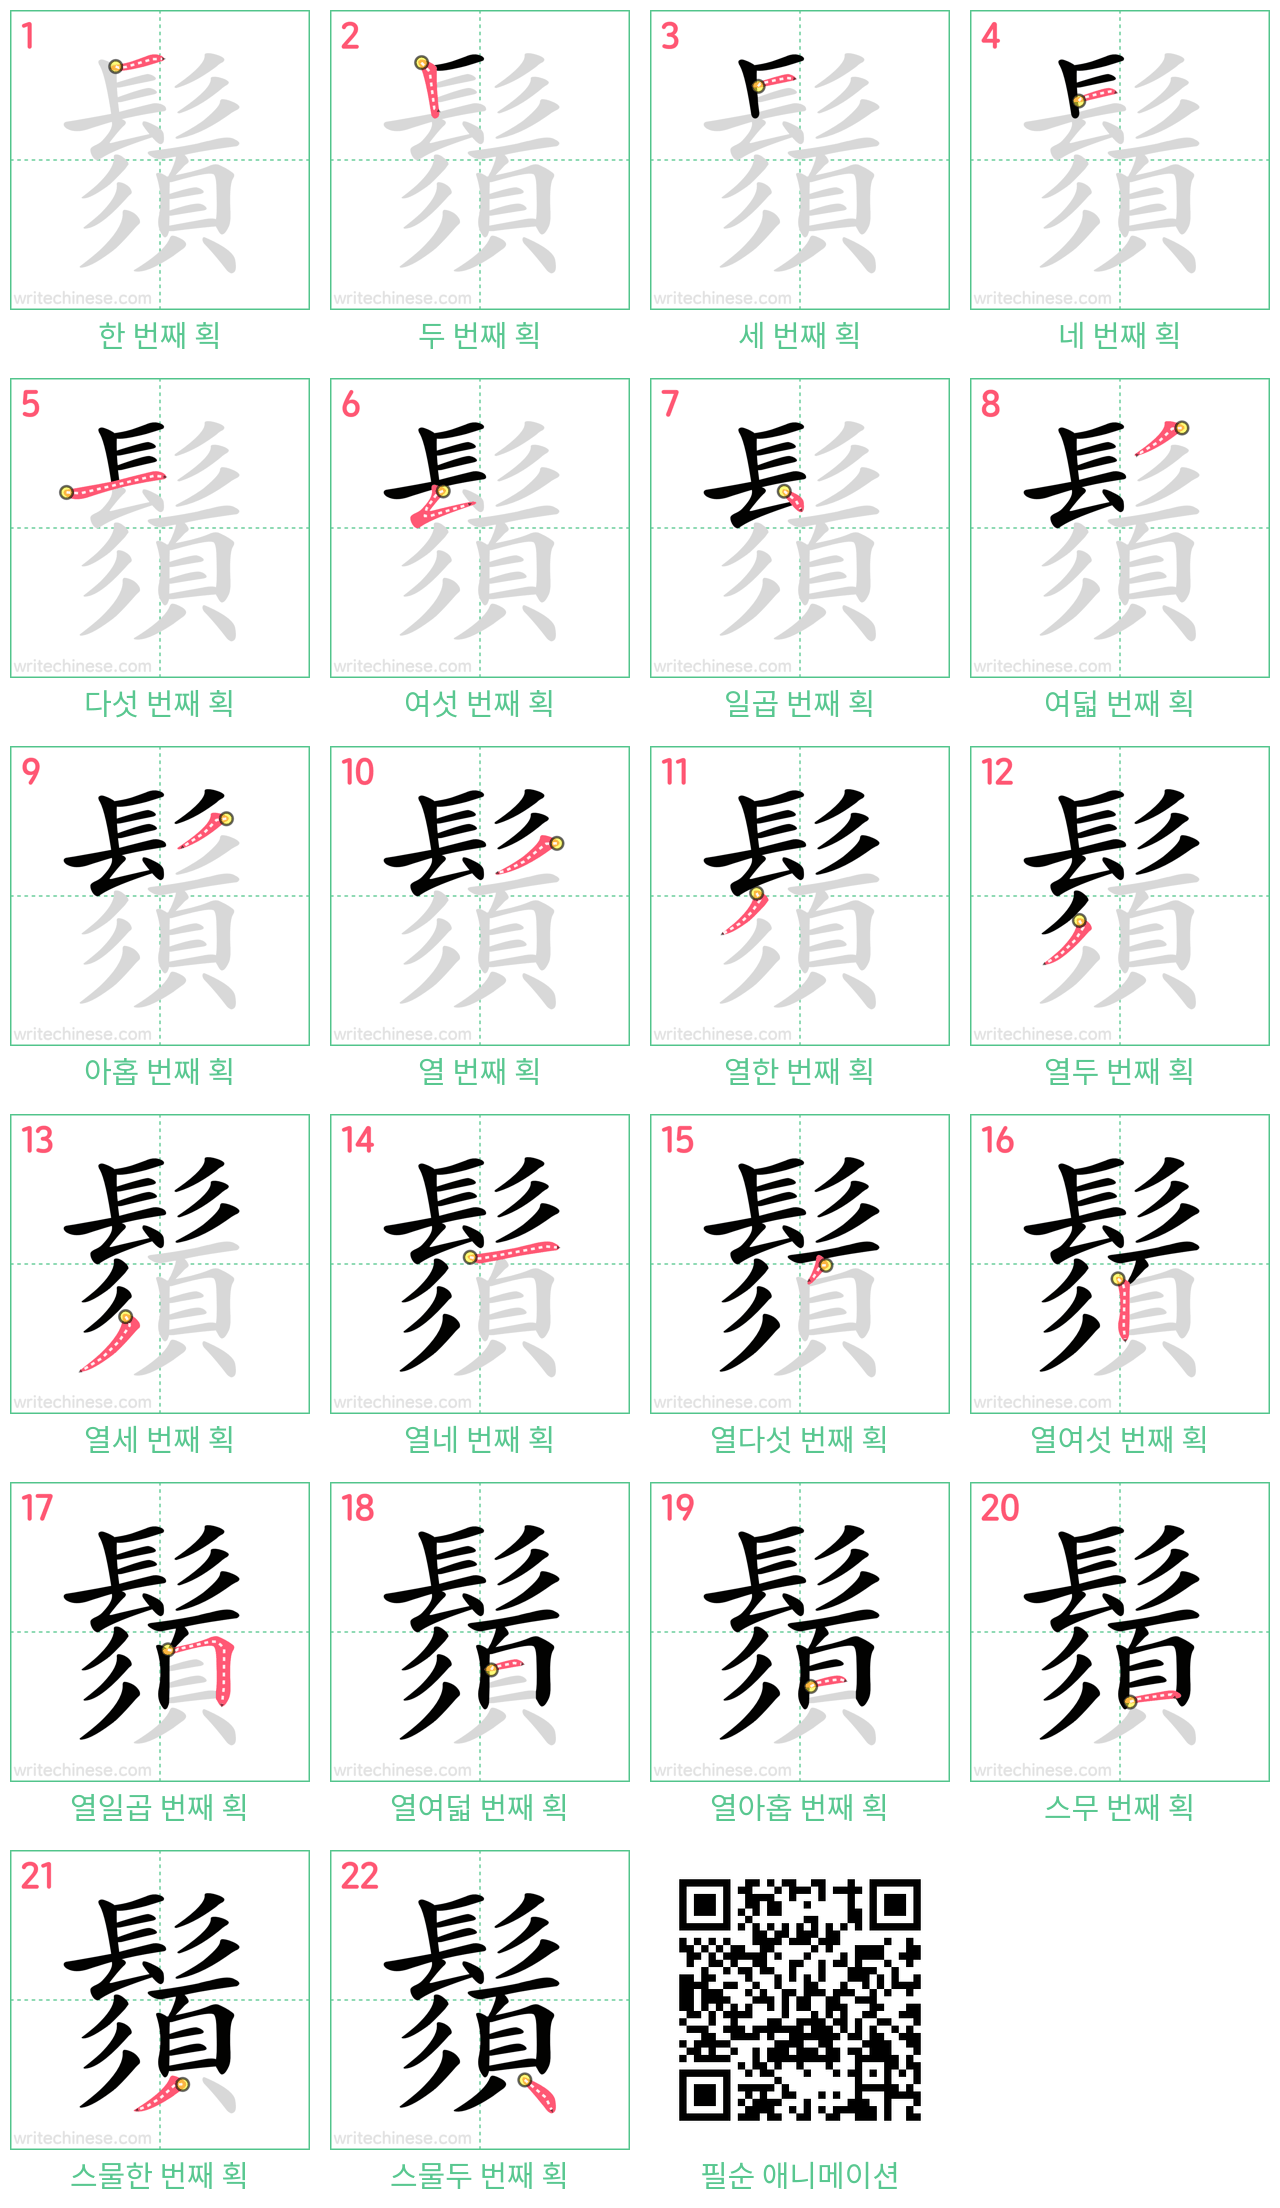 鬚 step-by-step stroke order diagrams